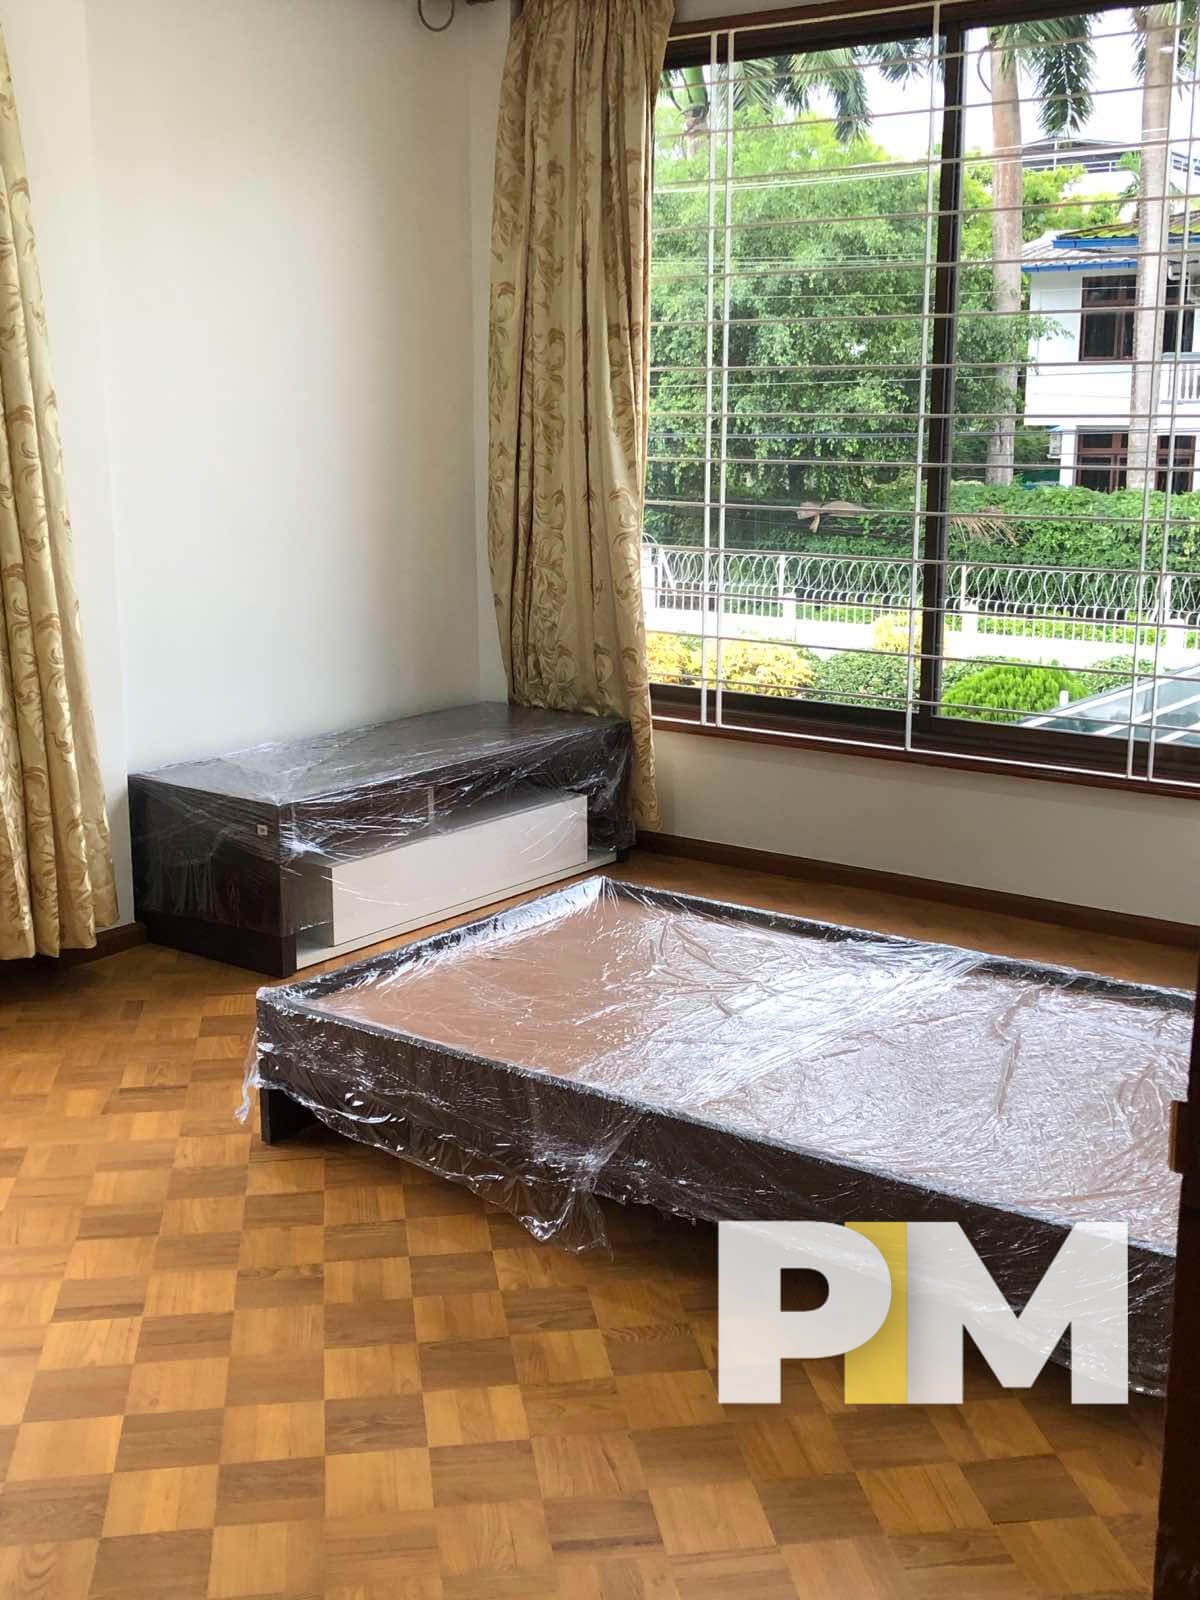 Room view - Real Estate in Yangon